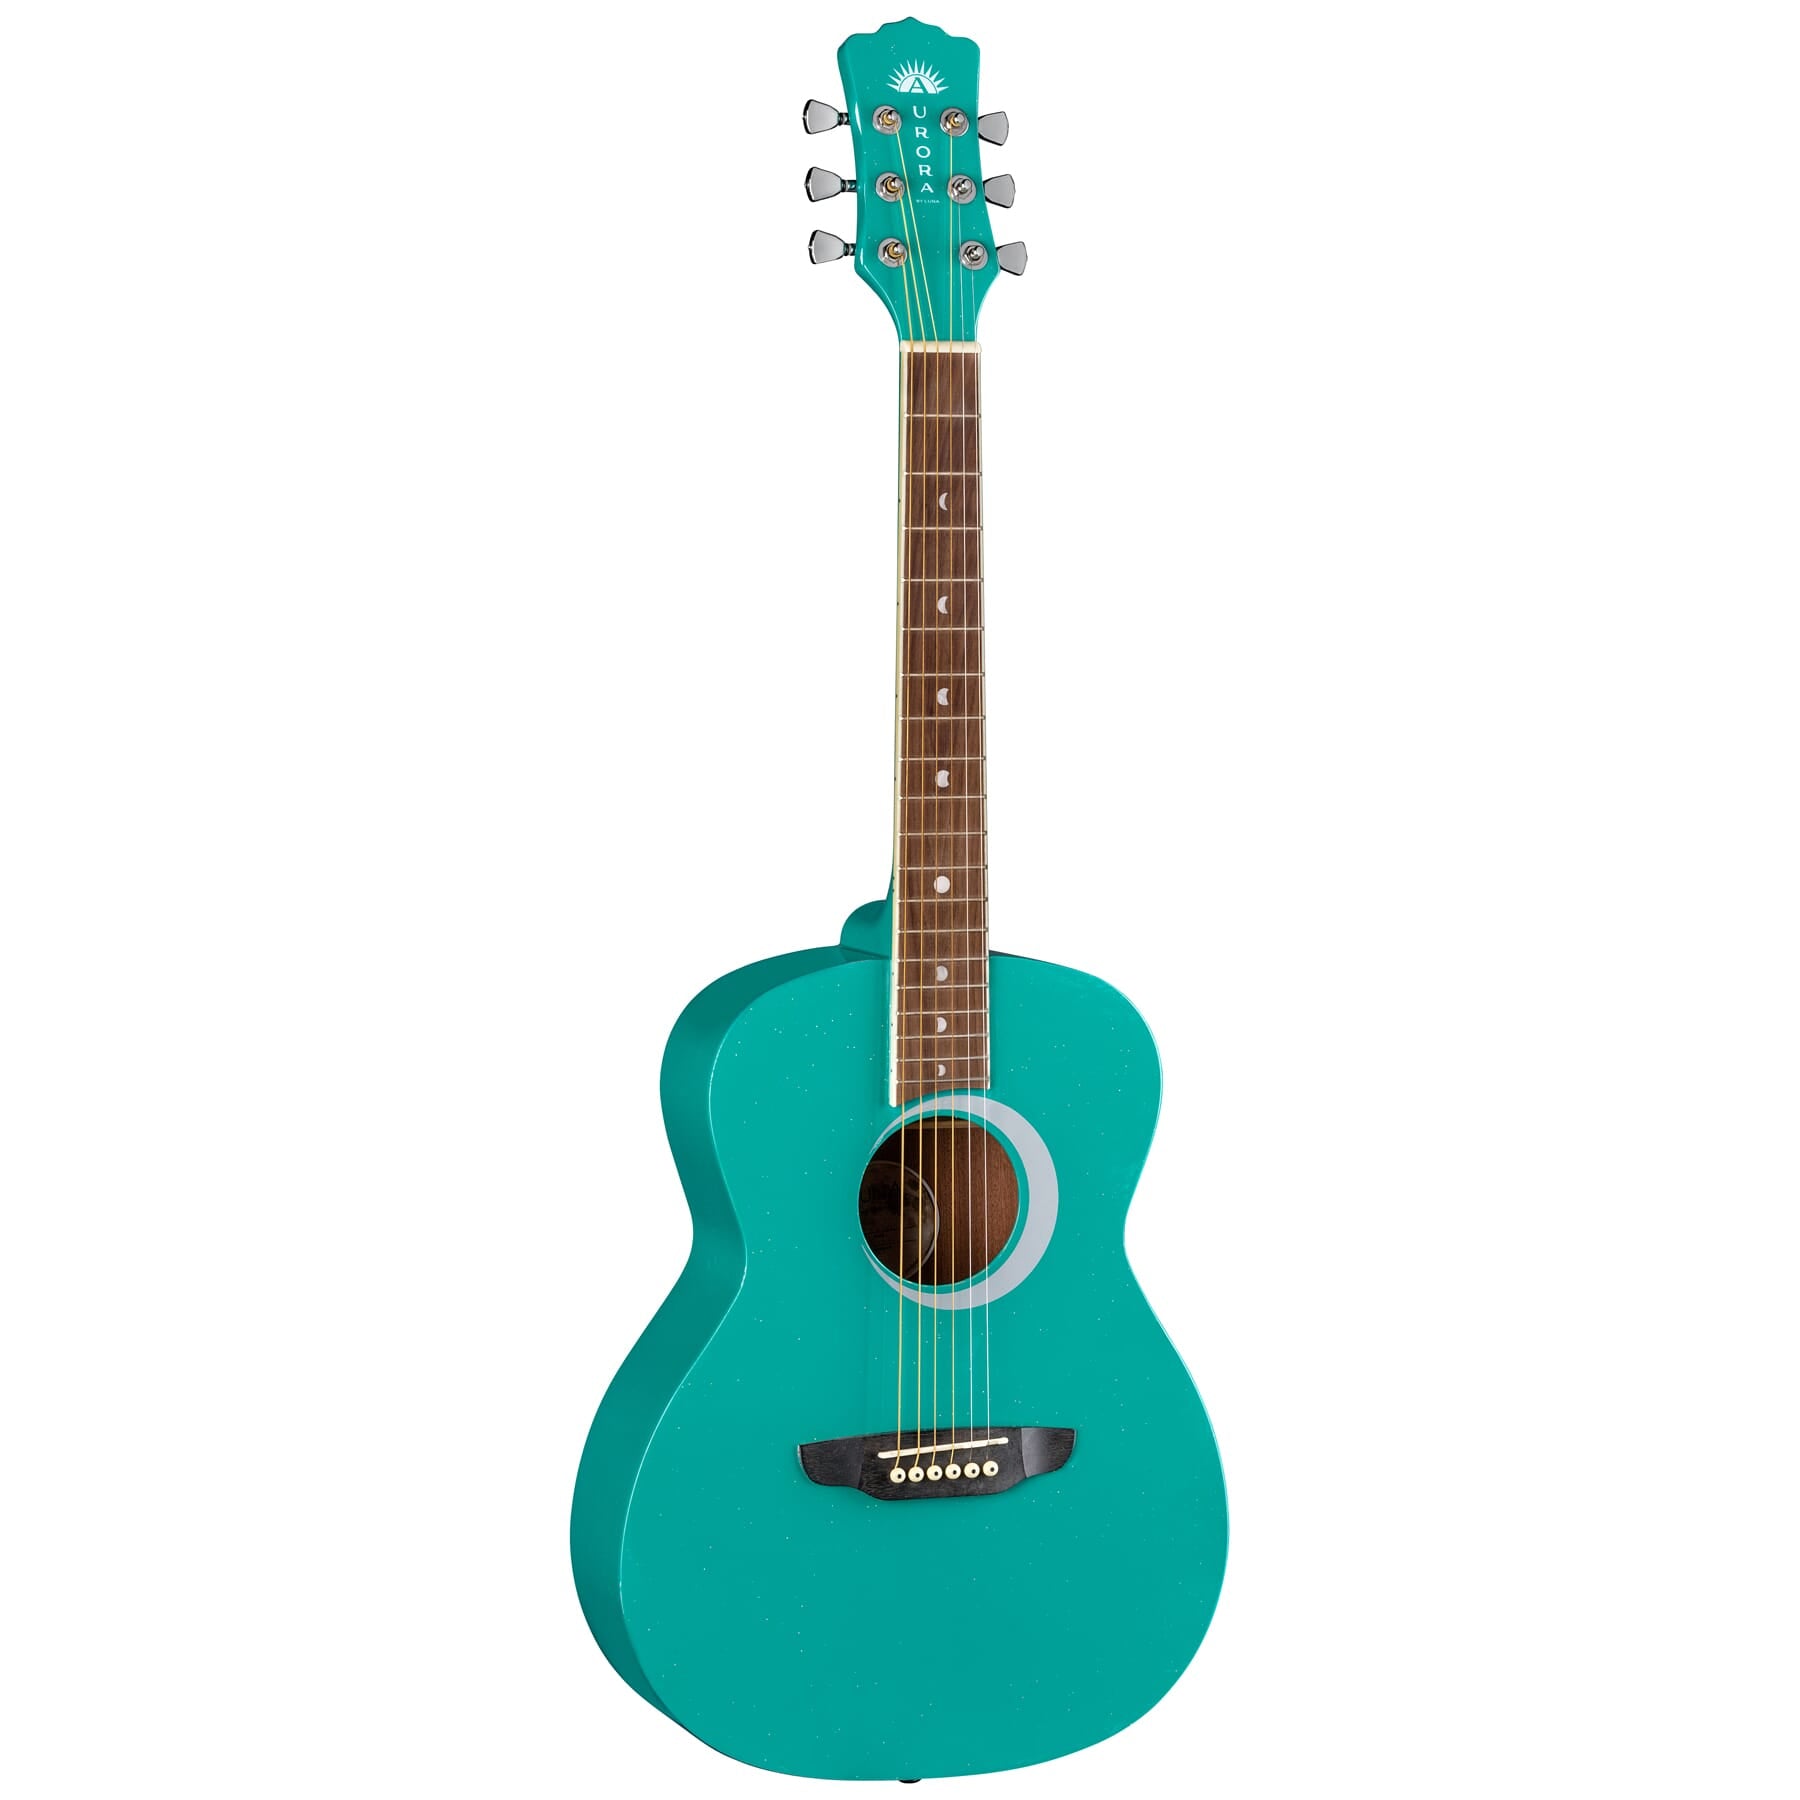 Luna Aurora Borealis 3/4-Size Acoustic Guitar, Teal Sparkle